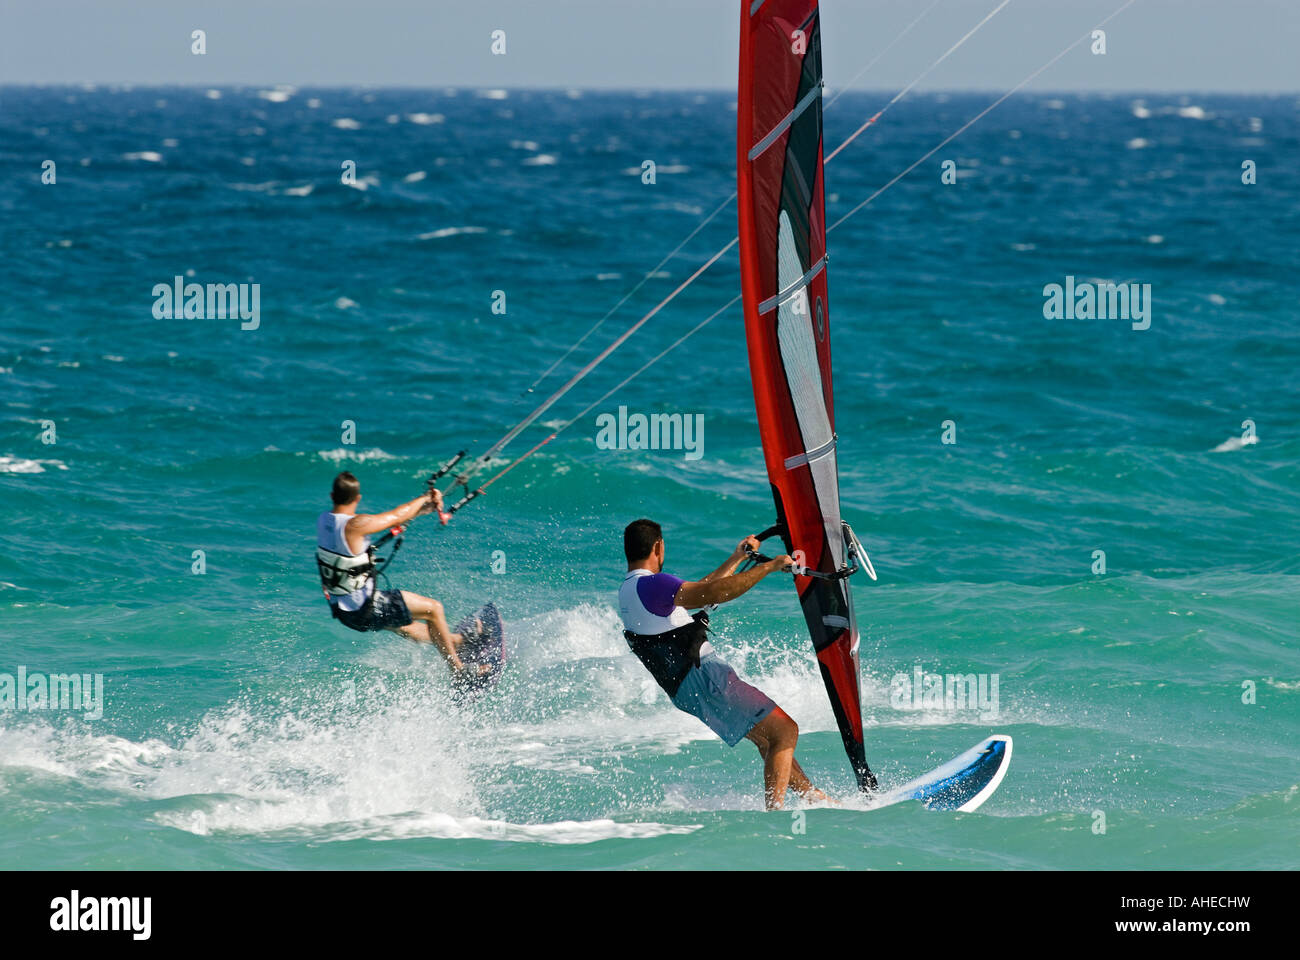 Tablas de windsurf y kitesurfer montar las olas en el mar mediterráneo. Foto de stock